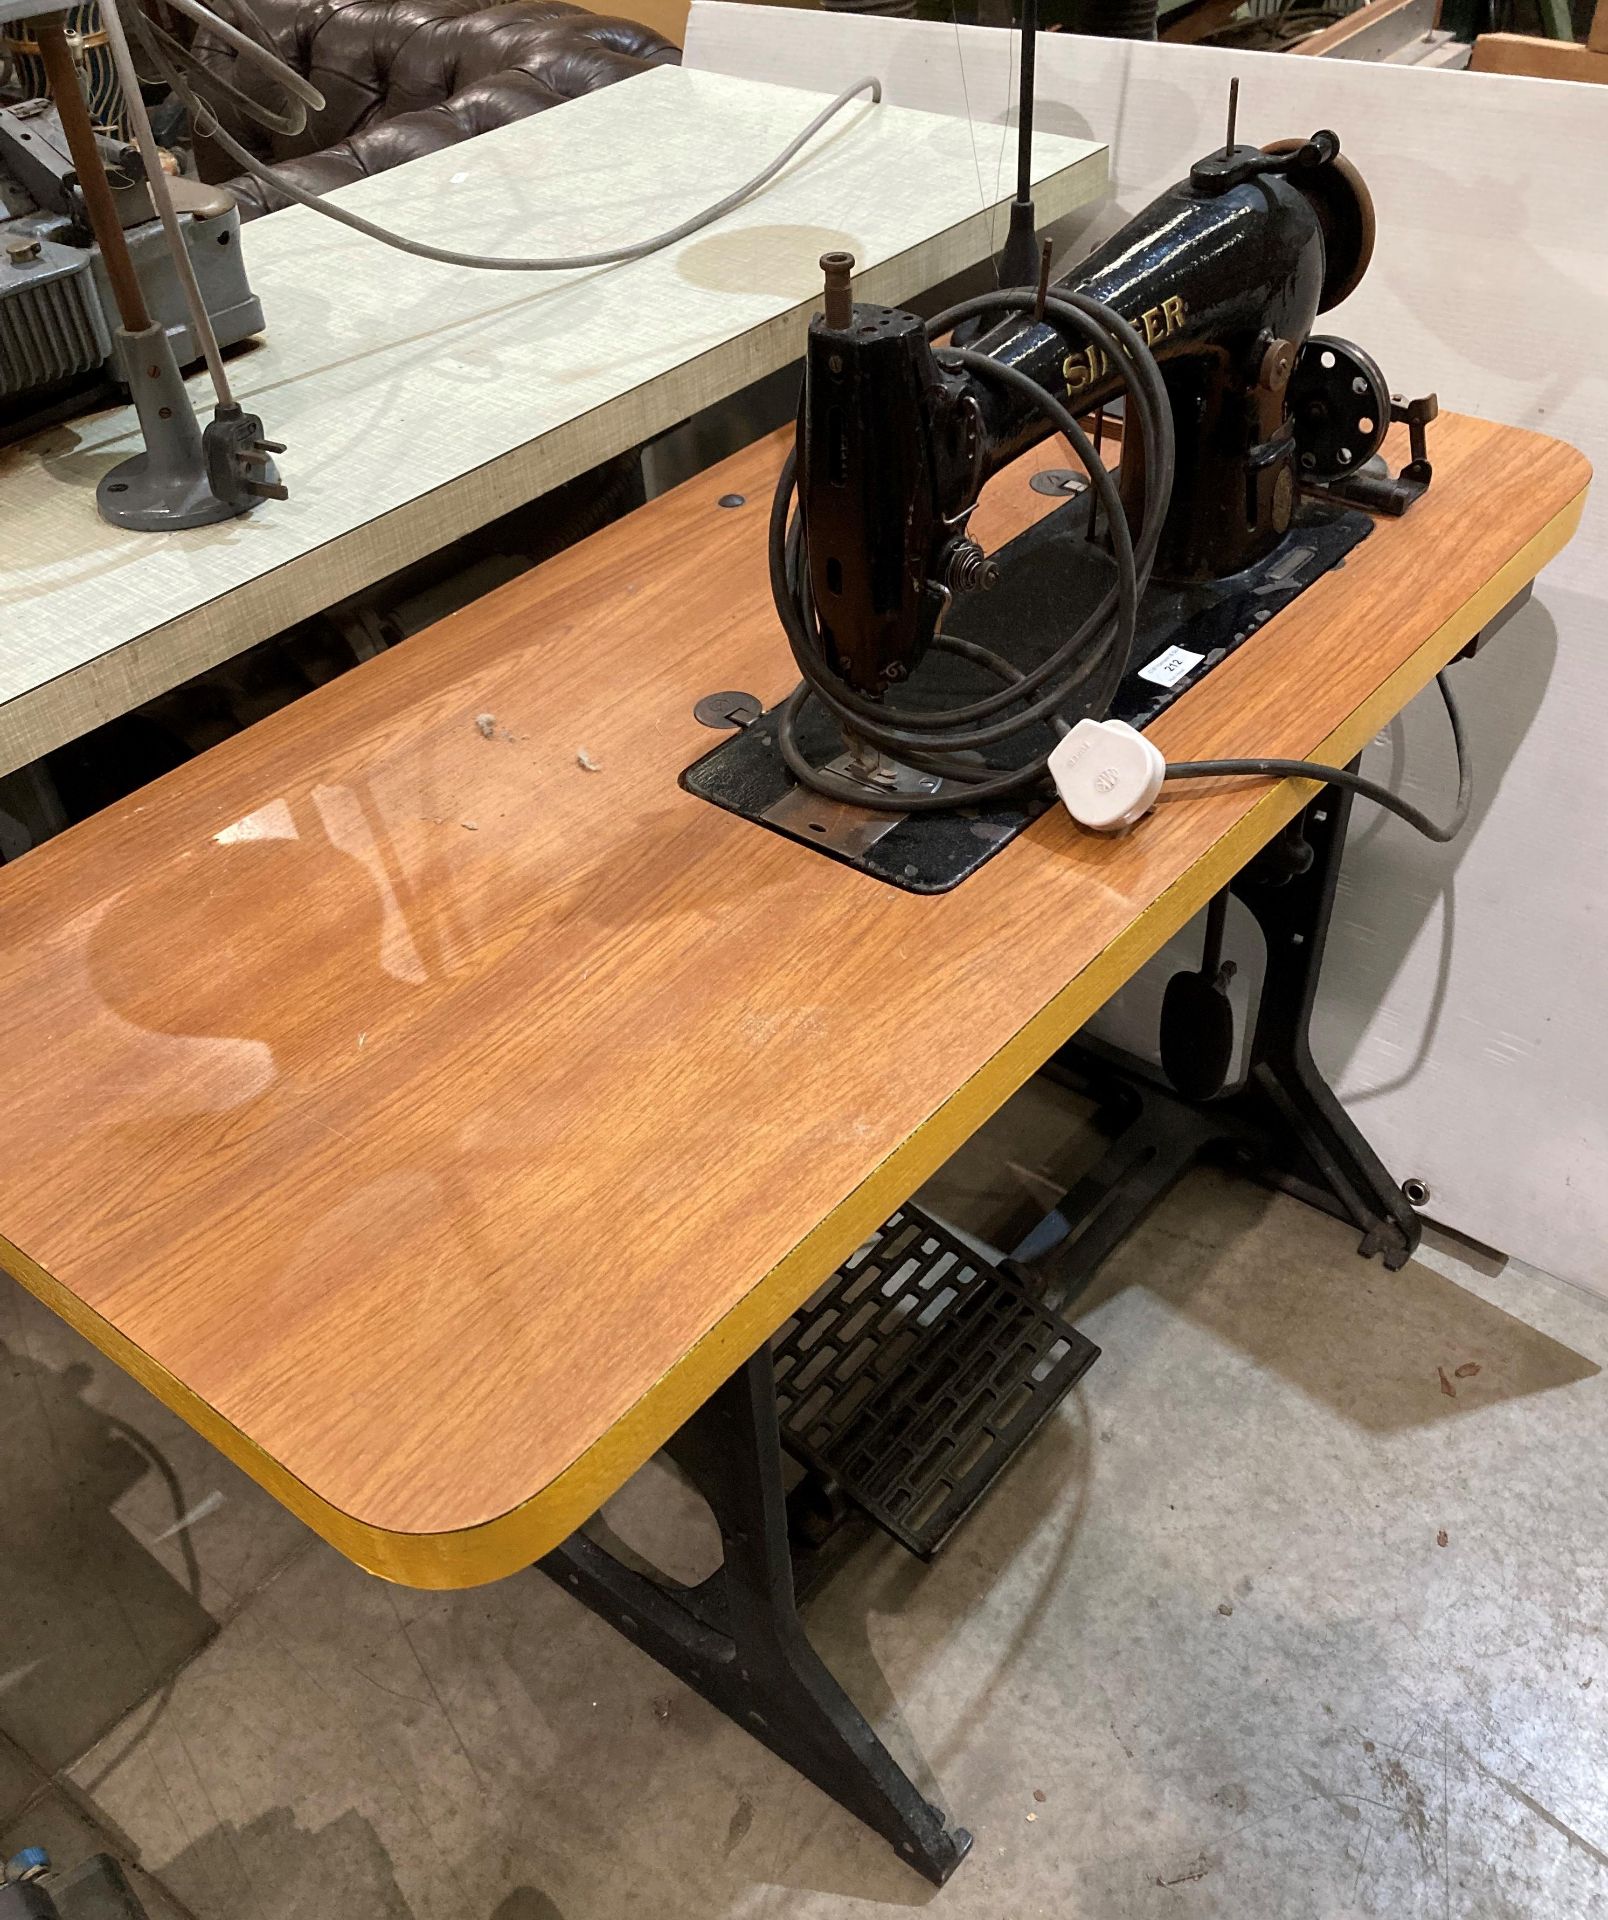 Singer 96KSV7 electric sewing machine (240v - no test,